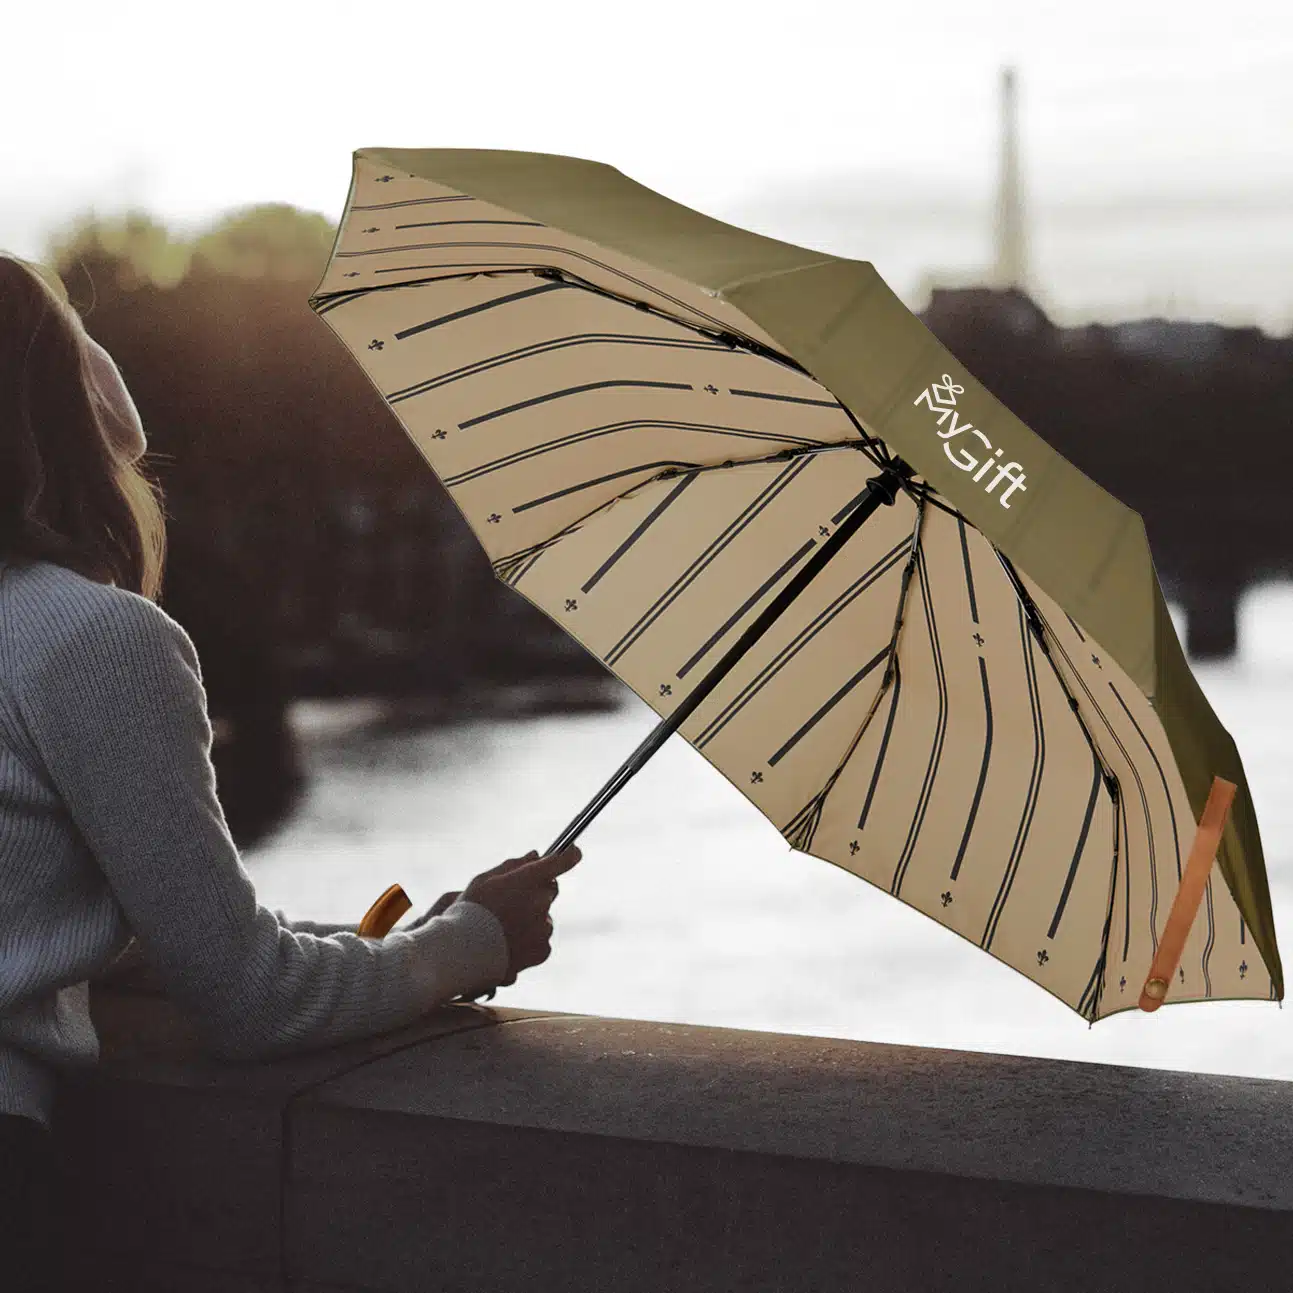 Un parapluie publicitaire personnalisé d'un logo et composé de matériaux recyclés